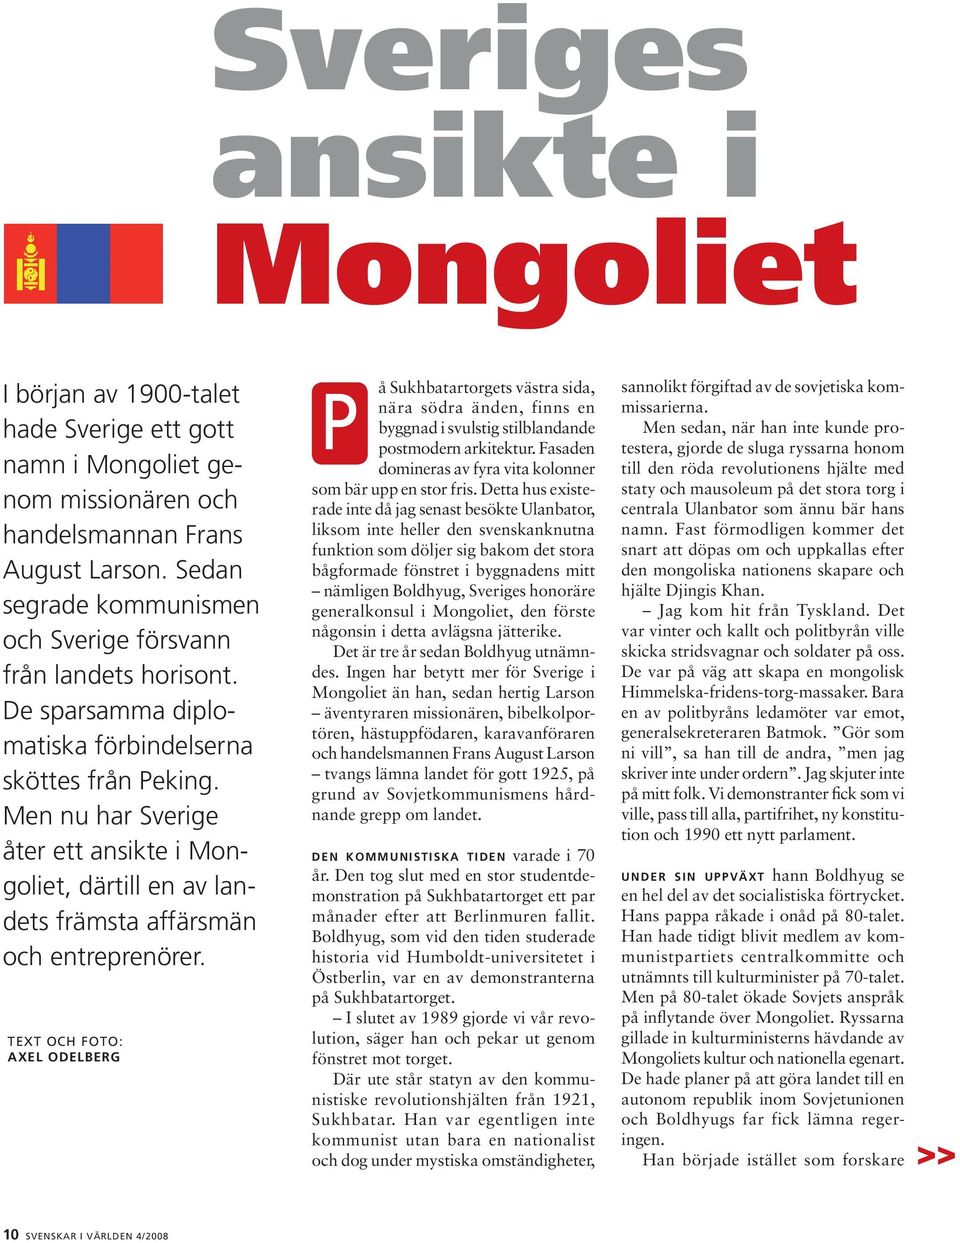 Men nu har Sverige åter ett ansikte i Mongoliet, därtill en av landets främsta affärsmän och entreprenörer.